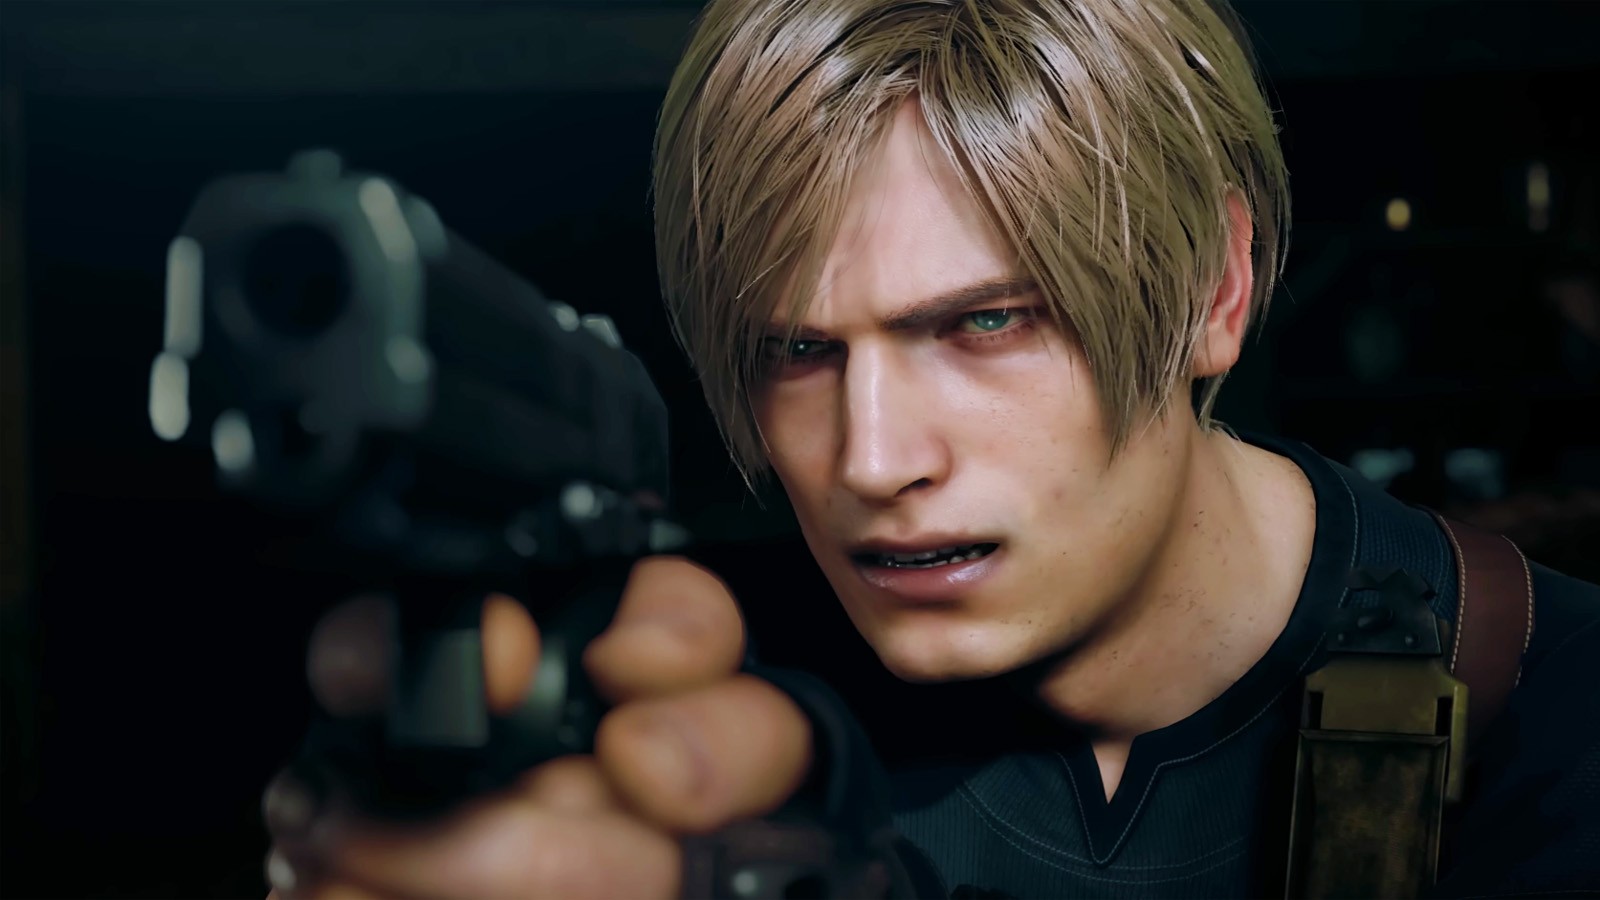 Resident Evil 4  Compare personagens no jogo original e no remake